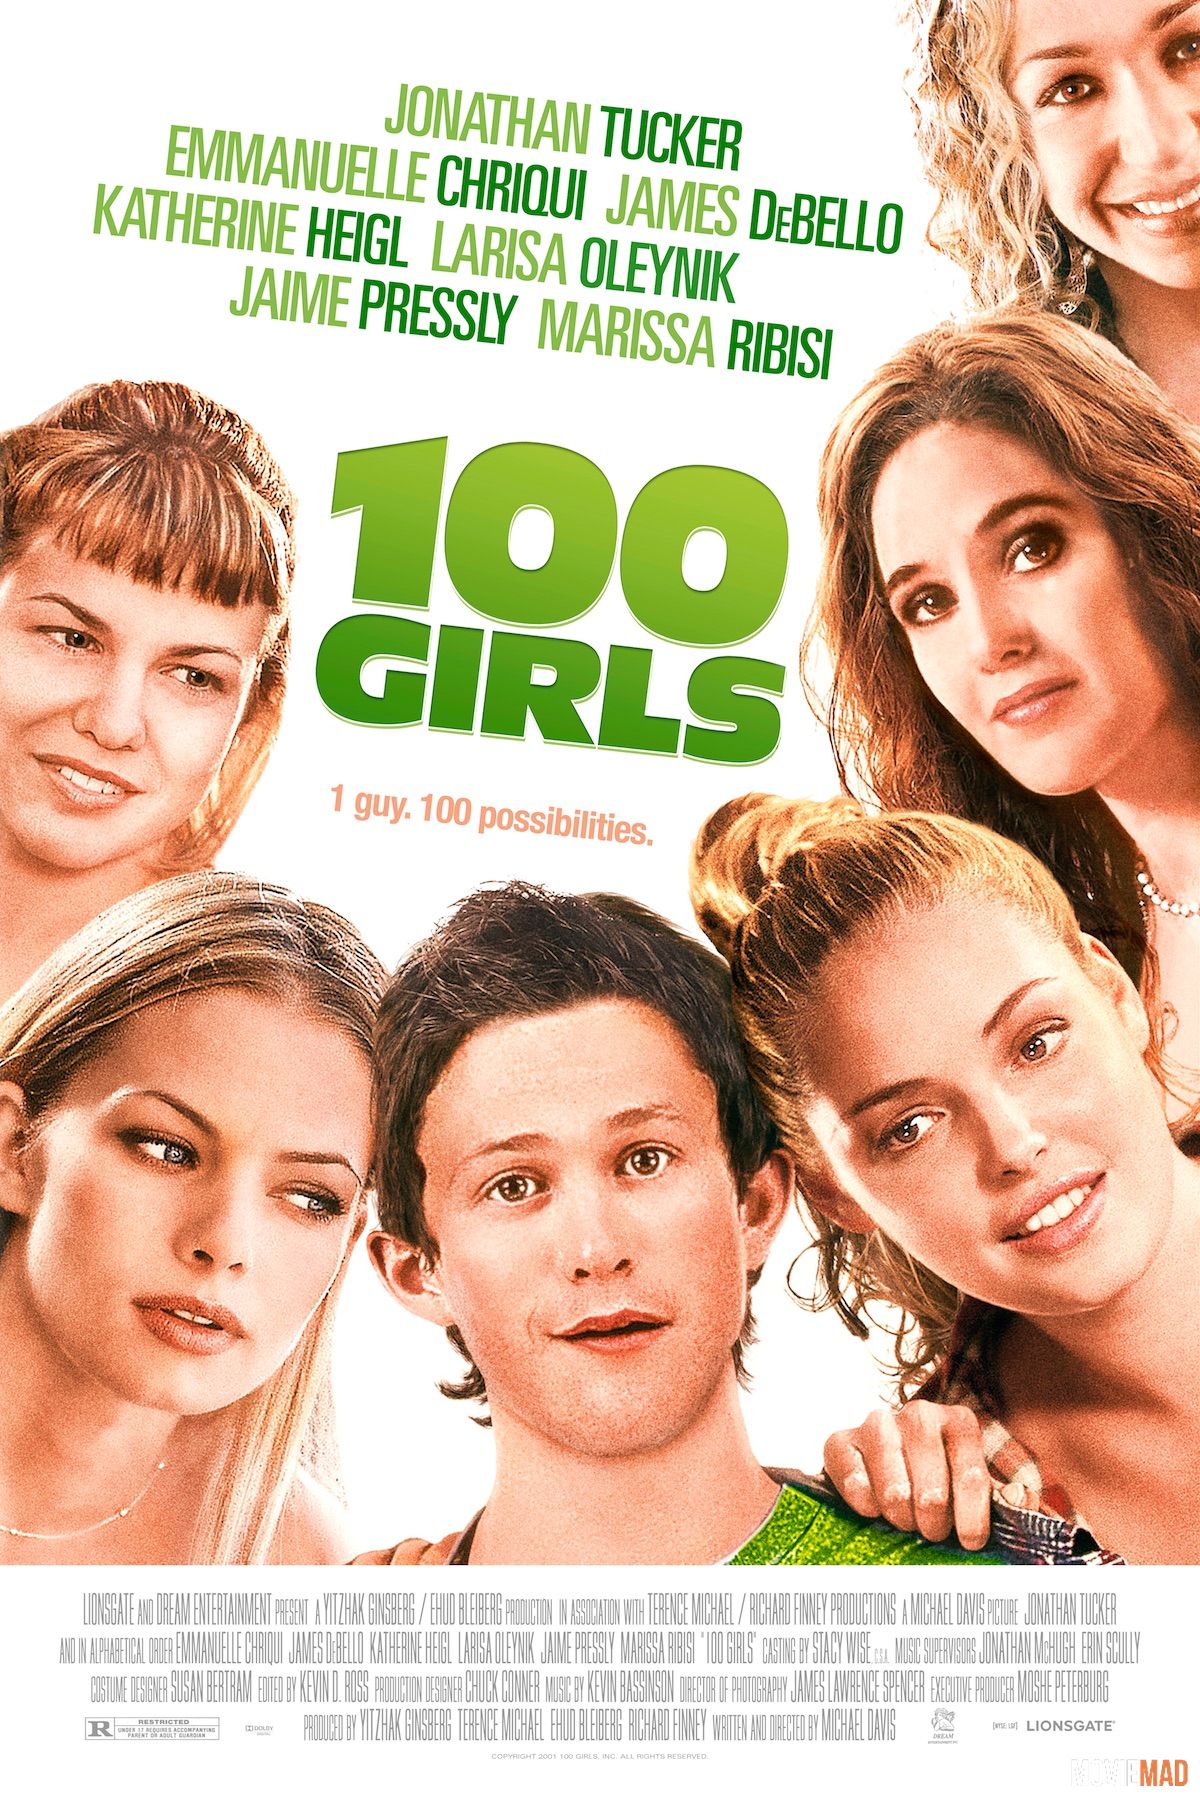 18+ 100 Girls 2000 English HDRip Full Movie 720p 480p